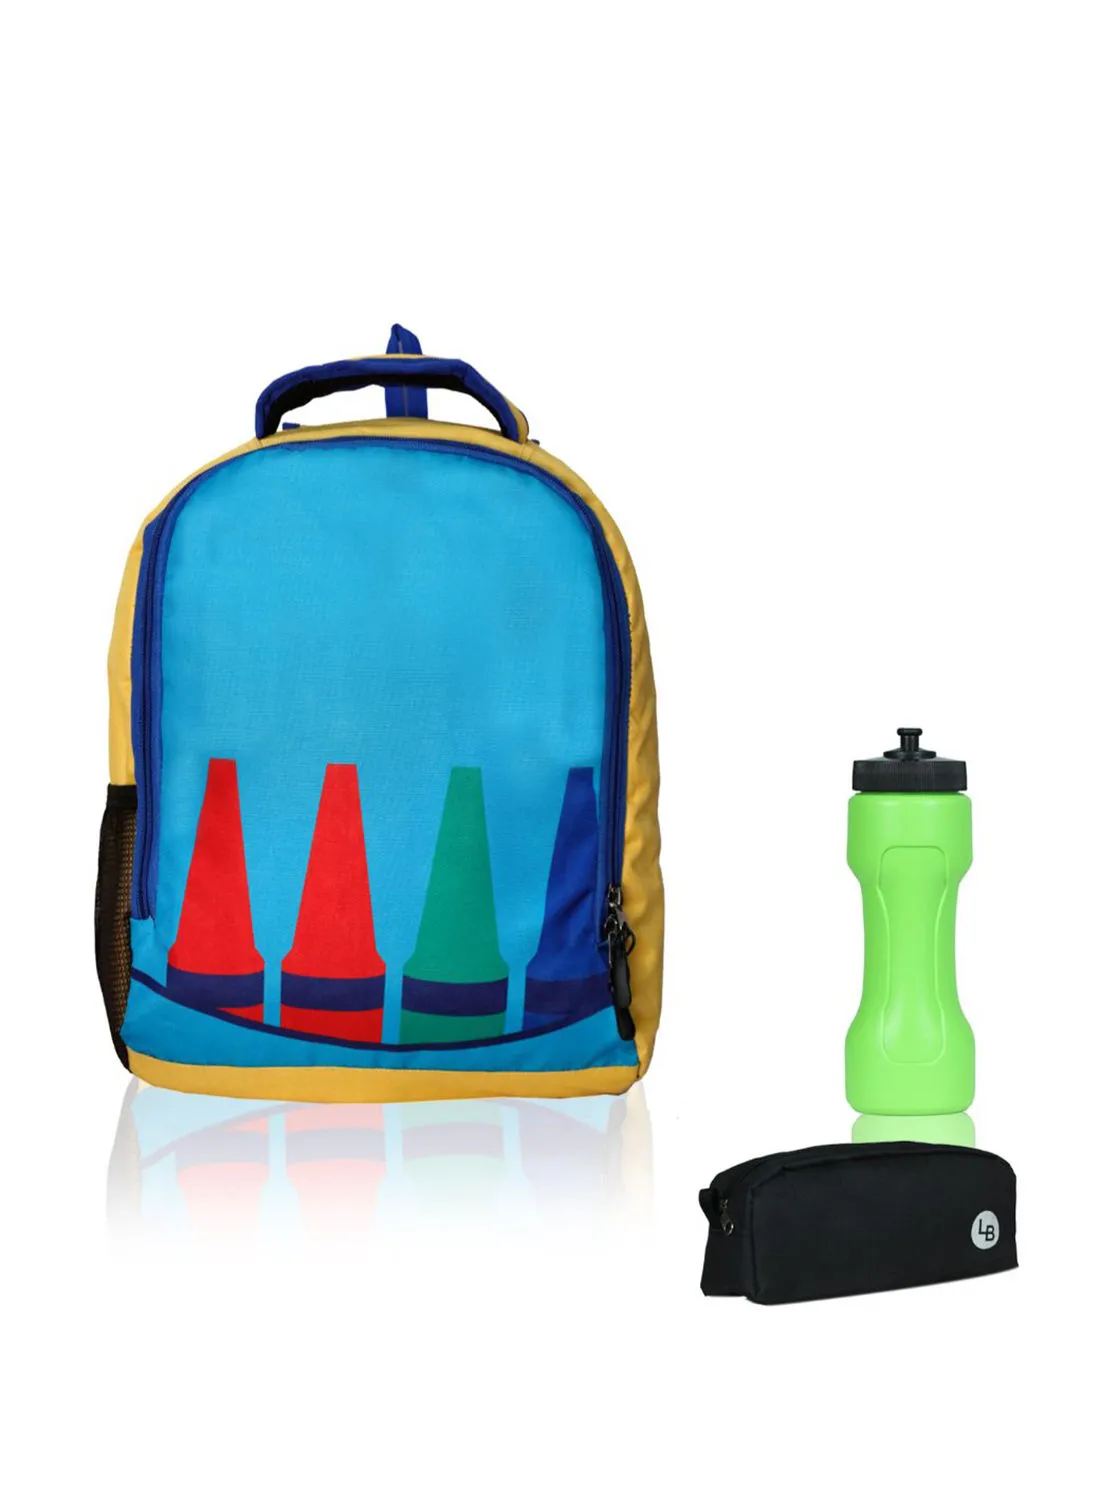 حقيبة ظهر LIONBONE من البوليستر للأطفال مع إغلاق بسحاب مثالية للفئة العمرية من 4 إلى 6 سنوات ، وحقيبة من البلاستيك وحقيبة من البوليستر أزرق سماوي / أسود / أخضر